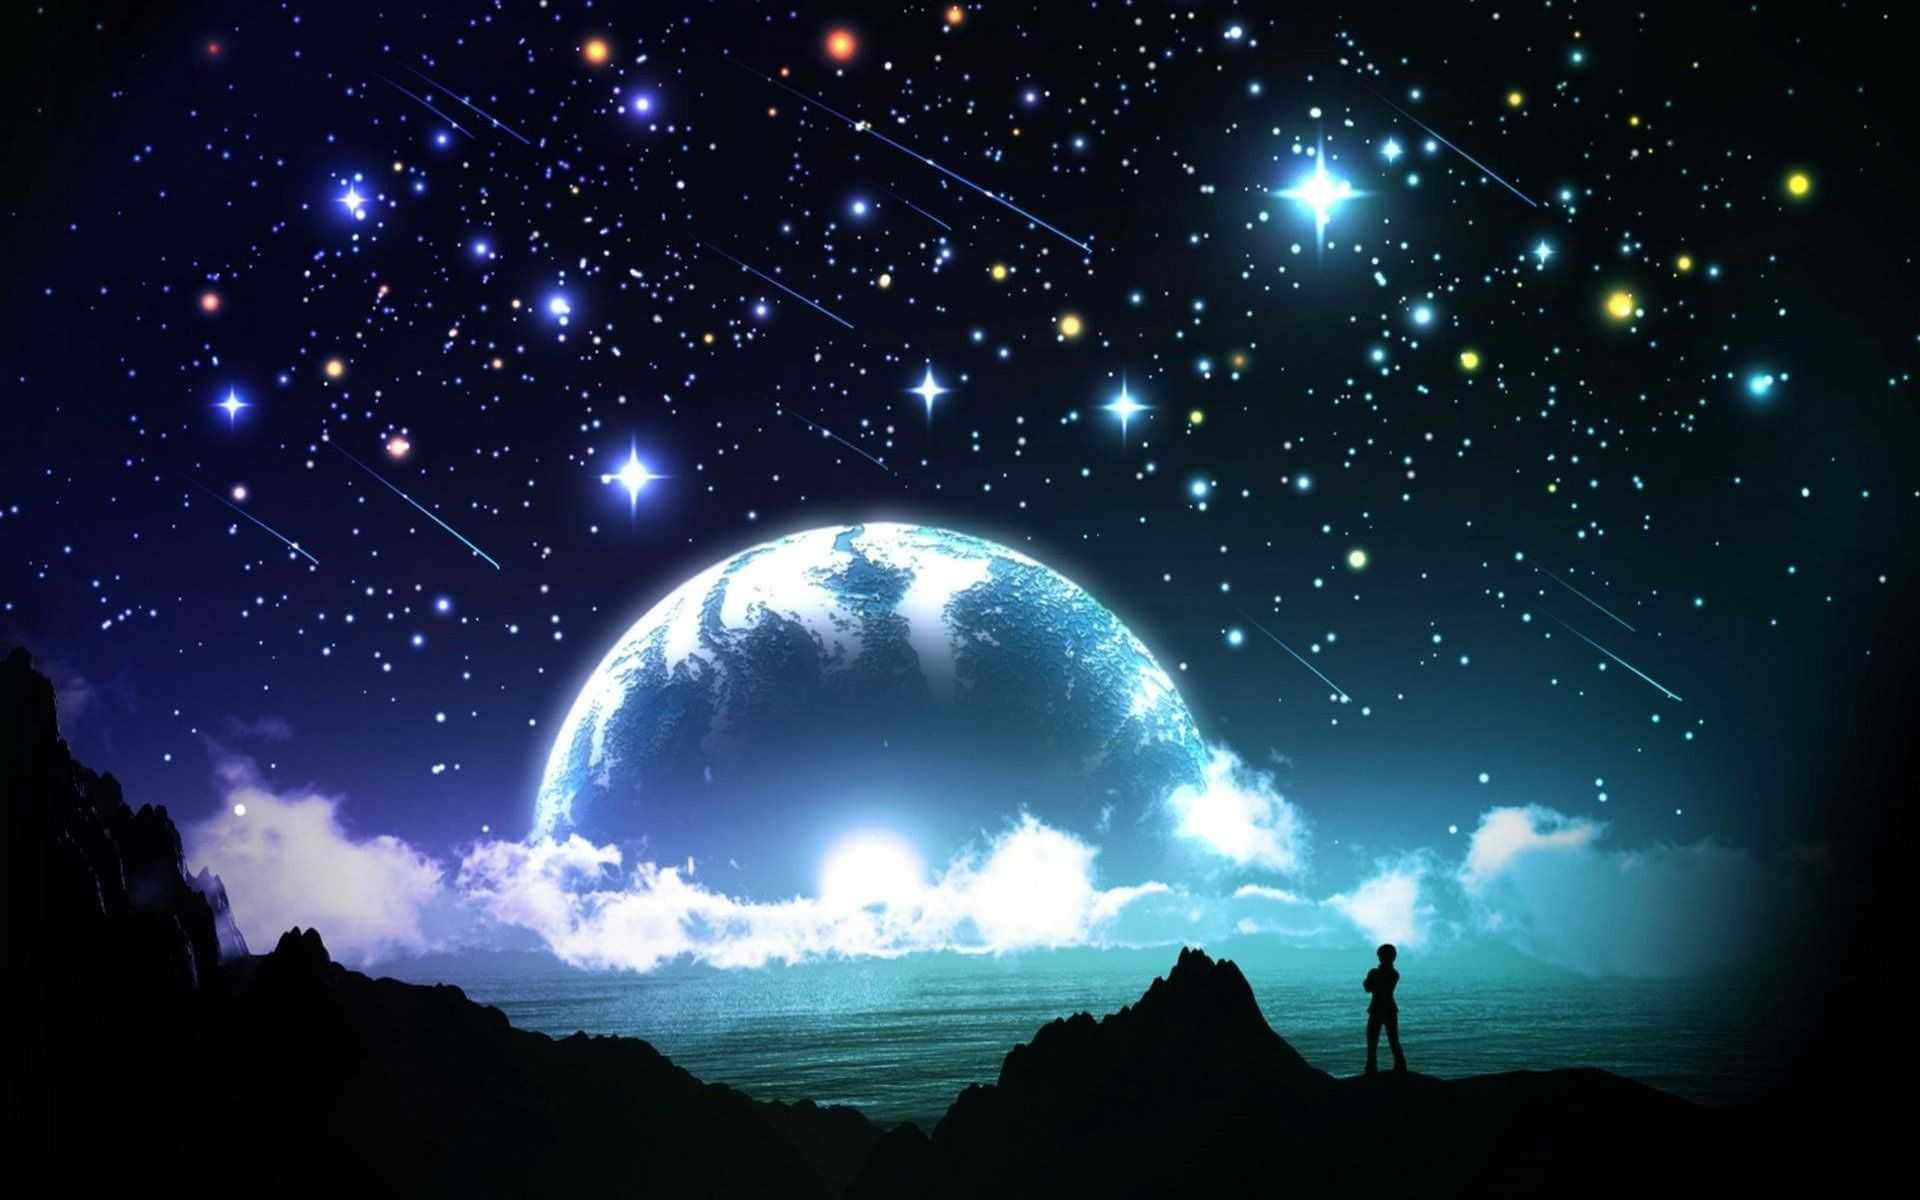 Fantastisksilhuettbild Av Månen Och Stjärnorna Wallpaper